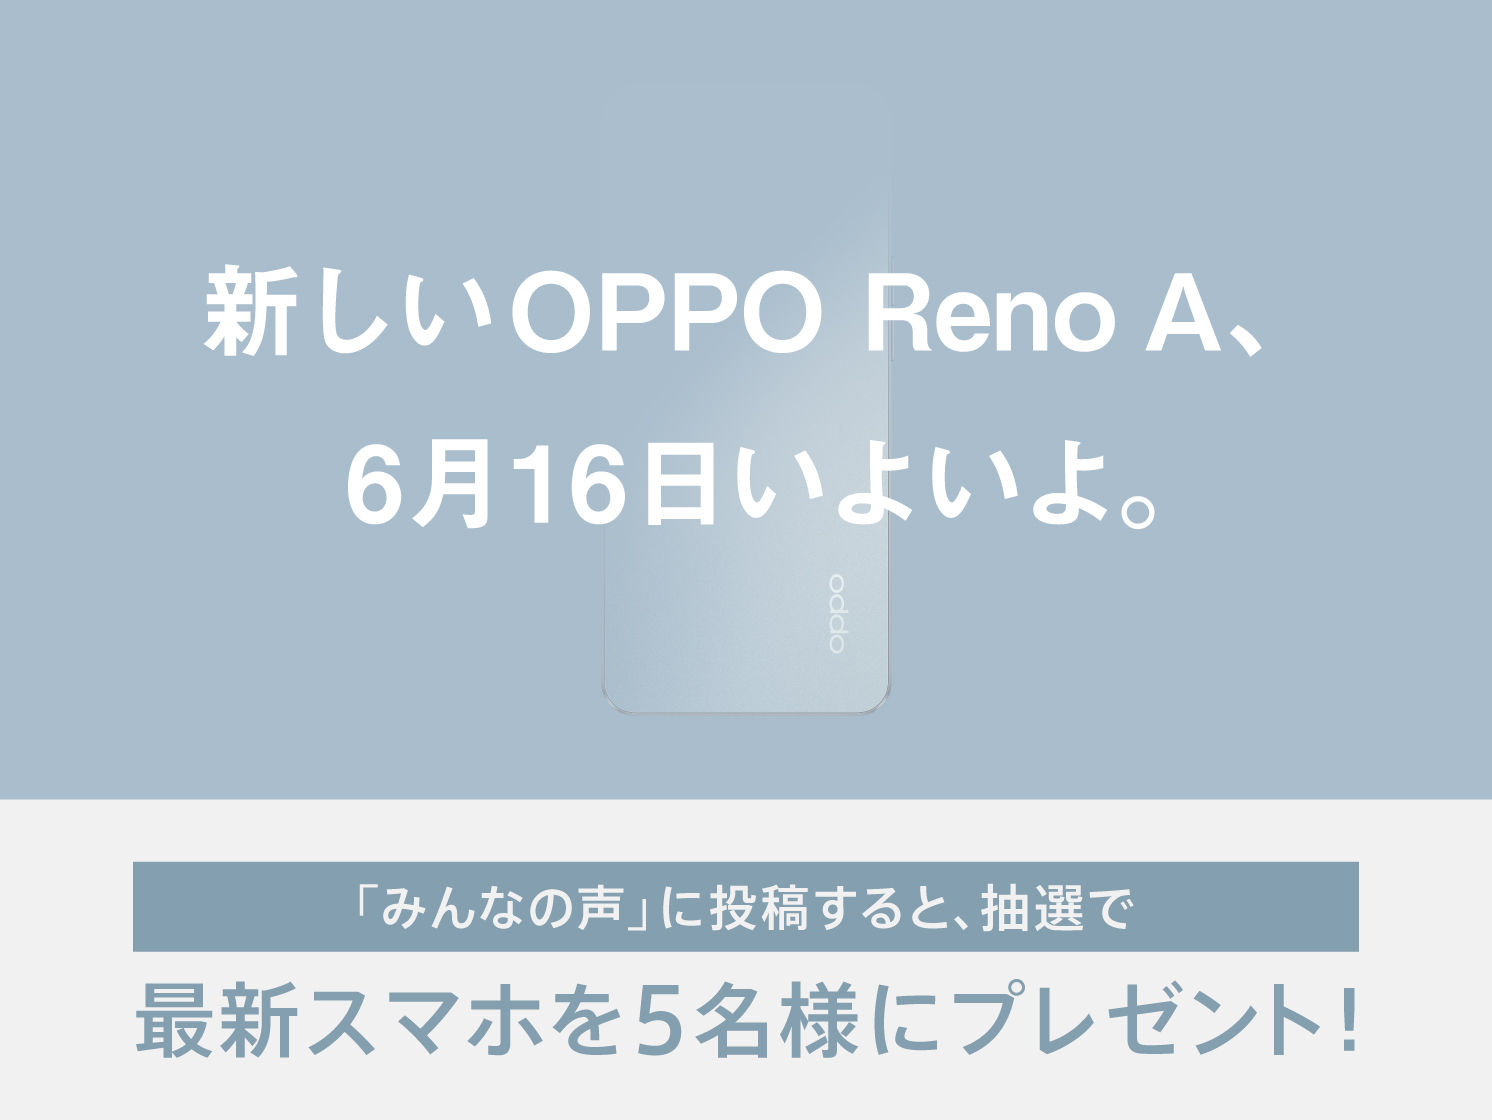 OPPO「Reno Aシリーズ」最新機種を16日発表へ、特設サイトも